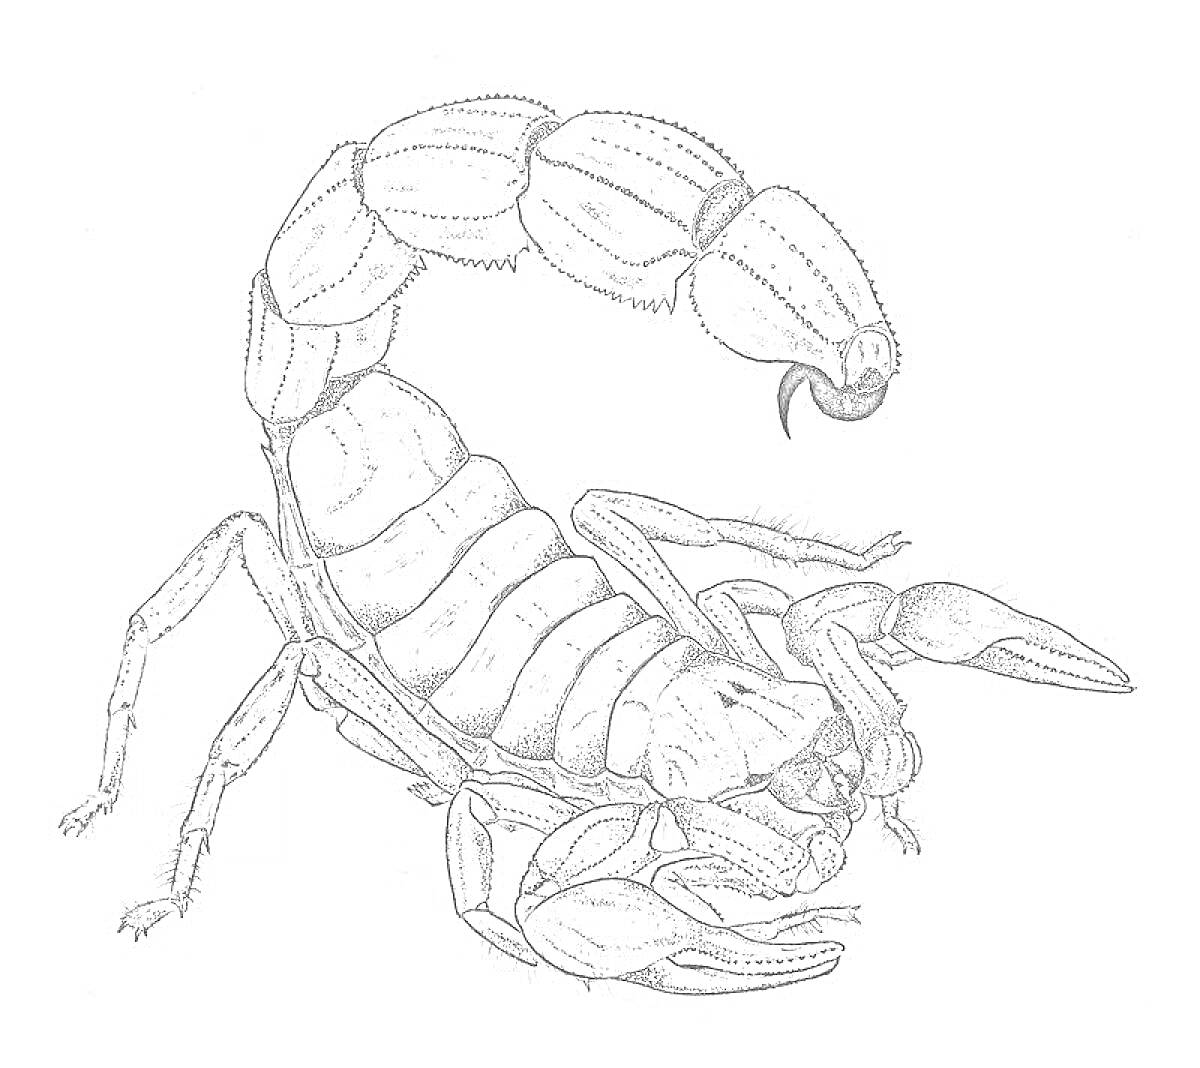 Раскраска Скорпион с поднятым хвостом и видимыми клешнями